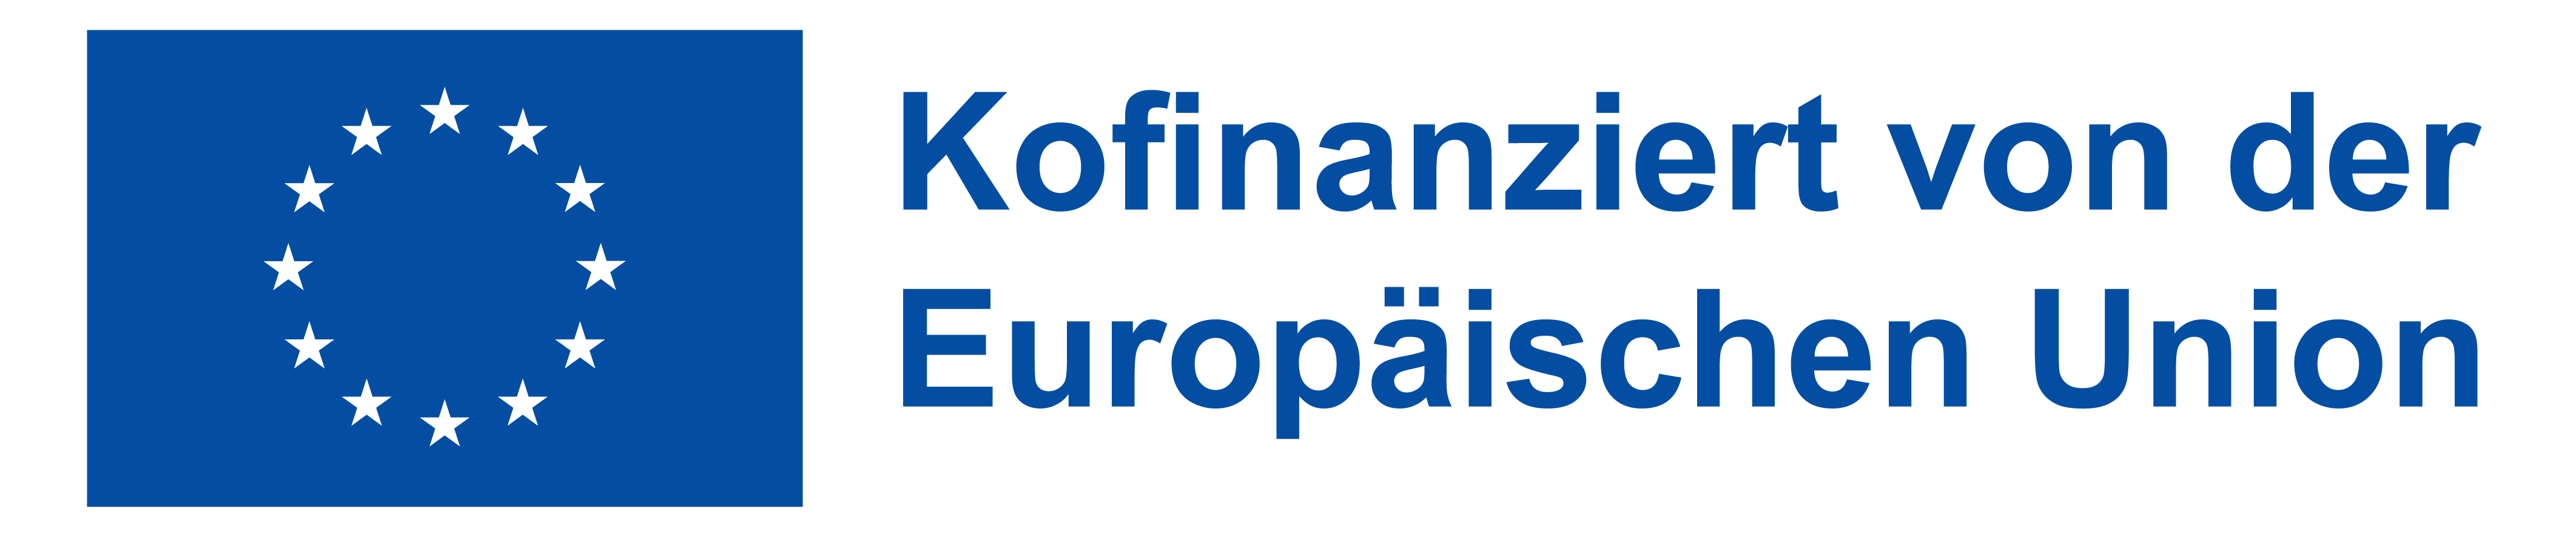 Homepage DE Kofinanziert von der Europaeischen Union PANTONE